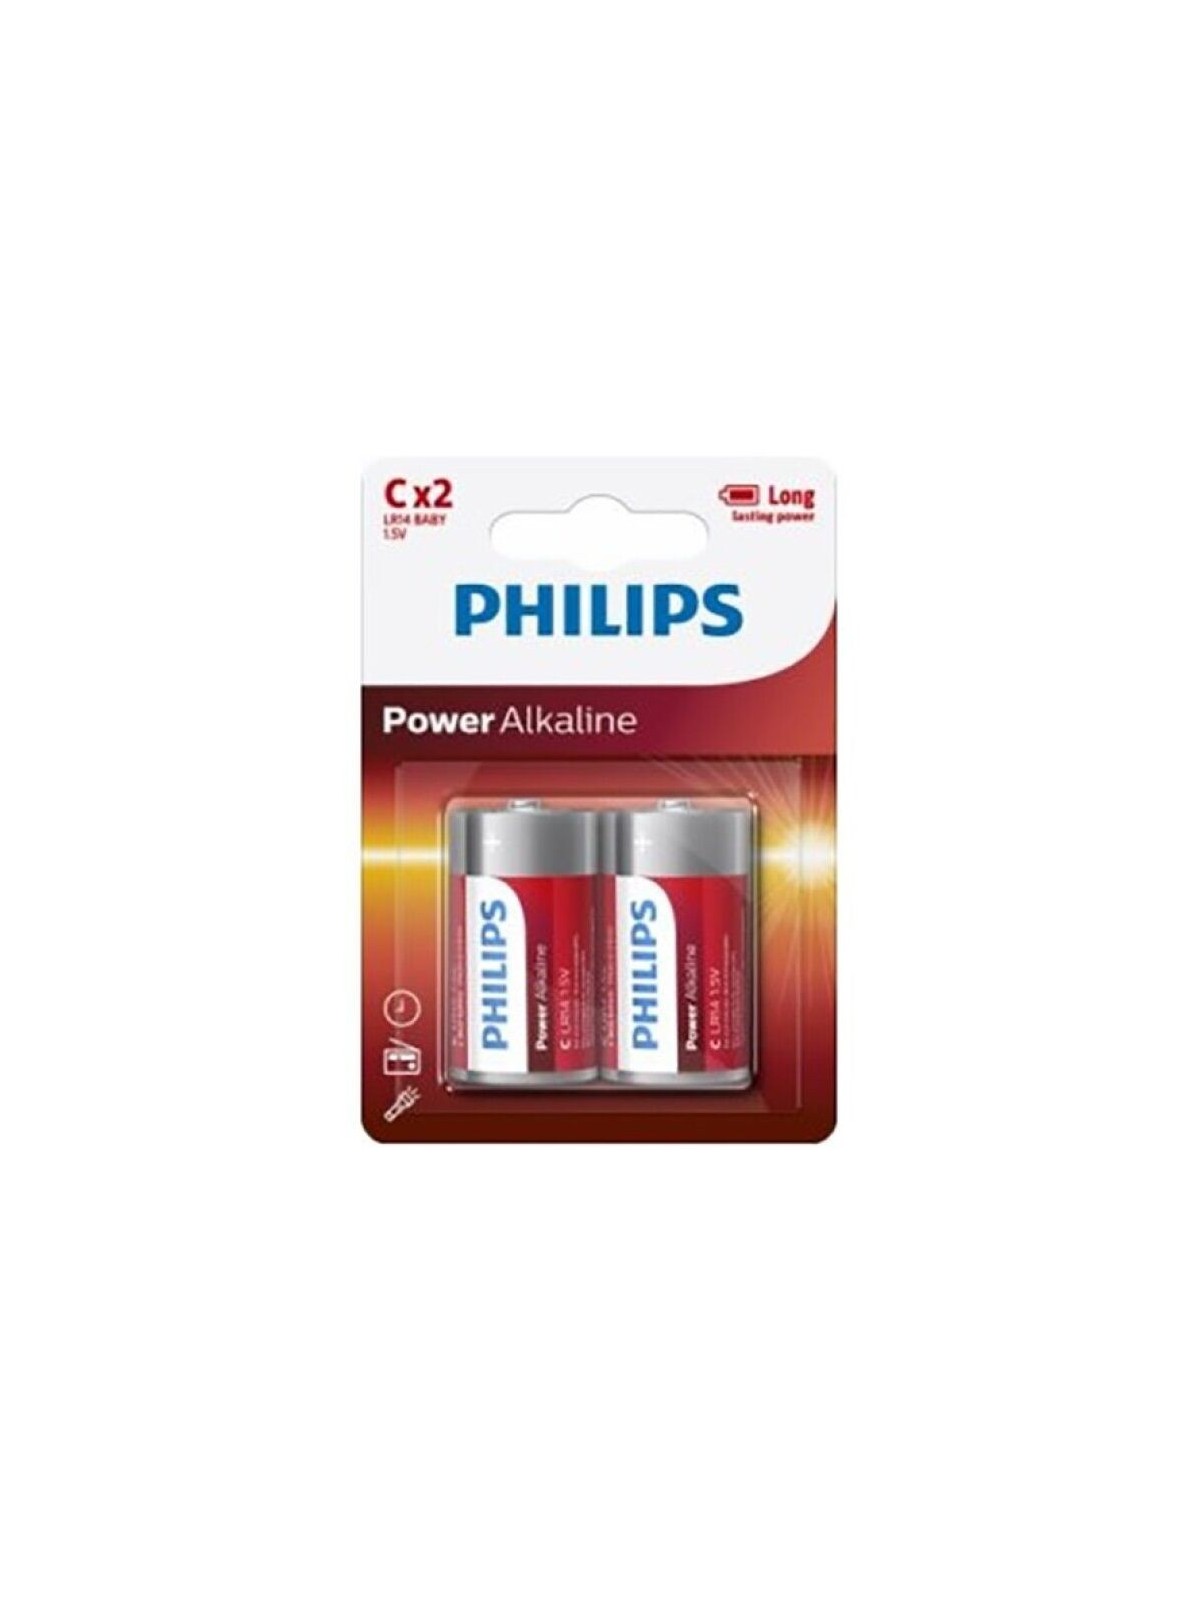 Philips Power Alkaline Pila C LR14 Blíster*2 - Comprar Pilas y baterías Phillips - Pilas & baterías (1)